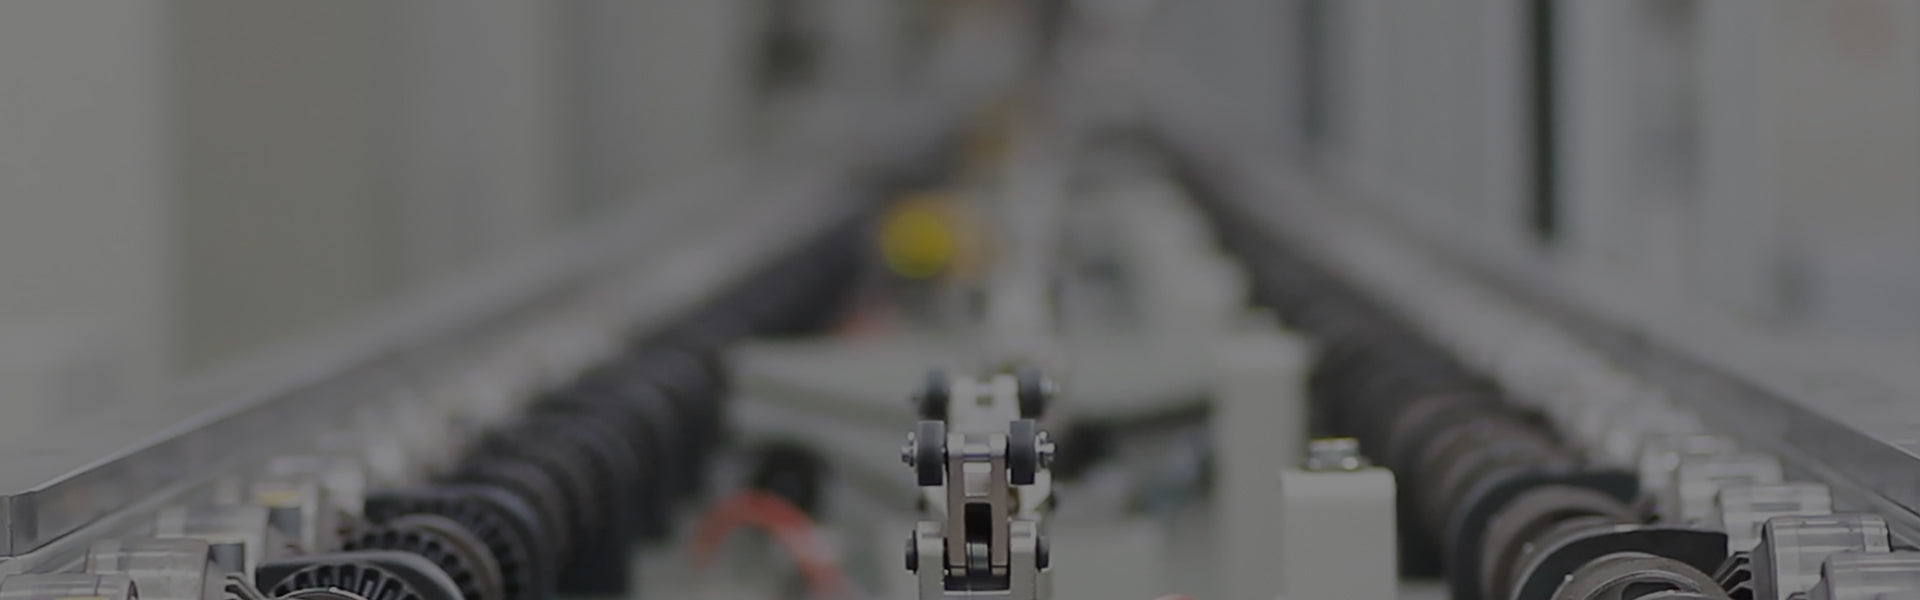 Mesin pemotong laser automatik 8x4 dengan kepala laser raytool pengawal cypcut